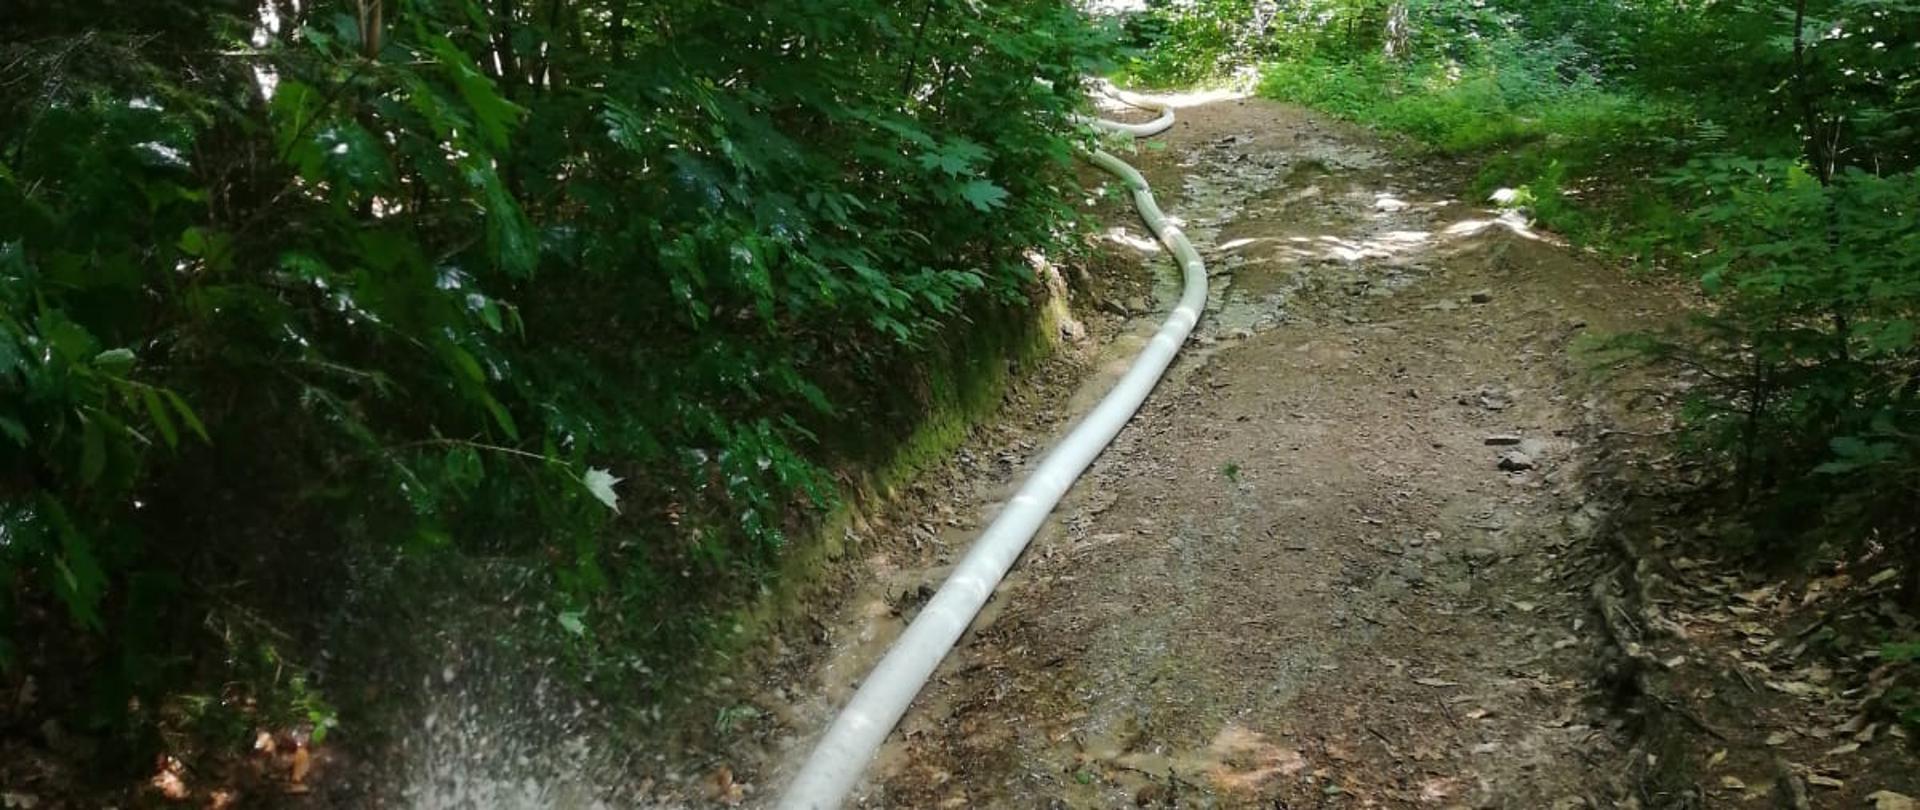 Na zdjęciu widać poprowadzoną linię główną składająca się z węży pożarniczych. Linia wężowa prowadzi wzdłuż ścieżki turystycznej ku górze Witosławskiej. Węże w plenerze leśnym. Pora dzienna, słonecznie.